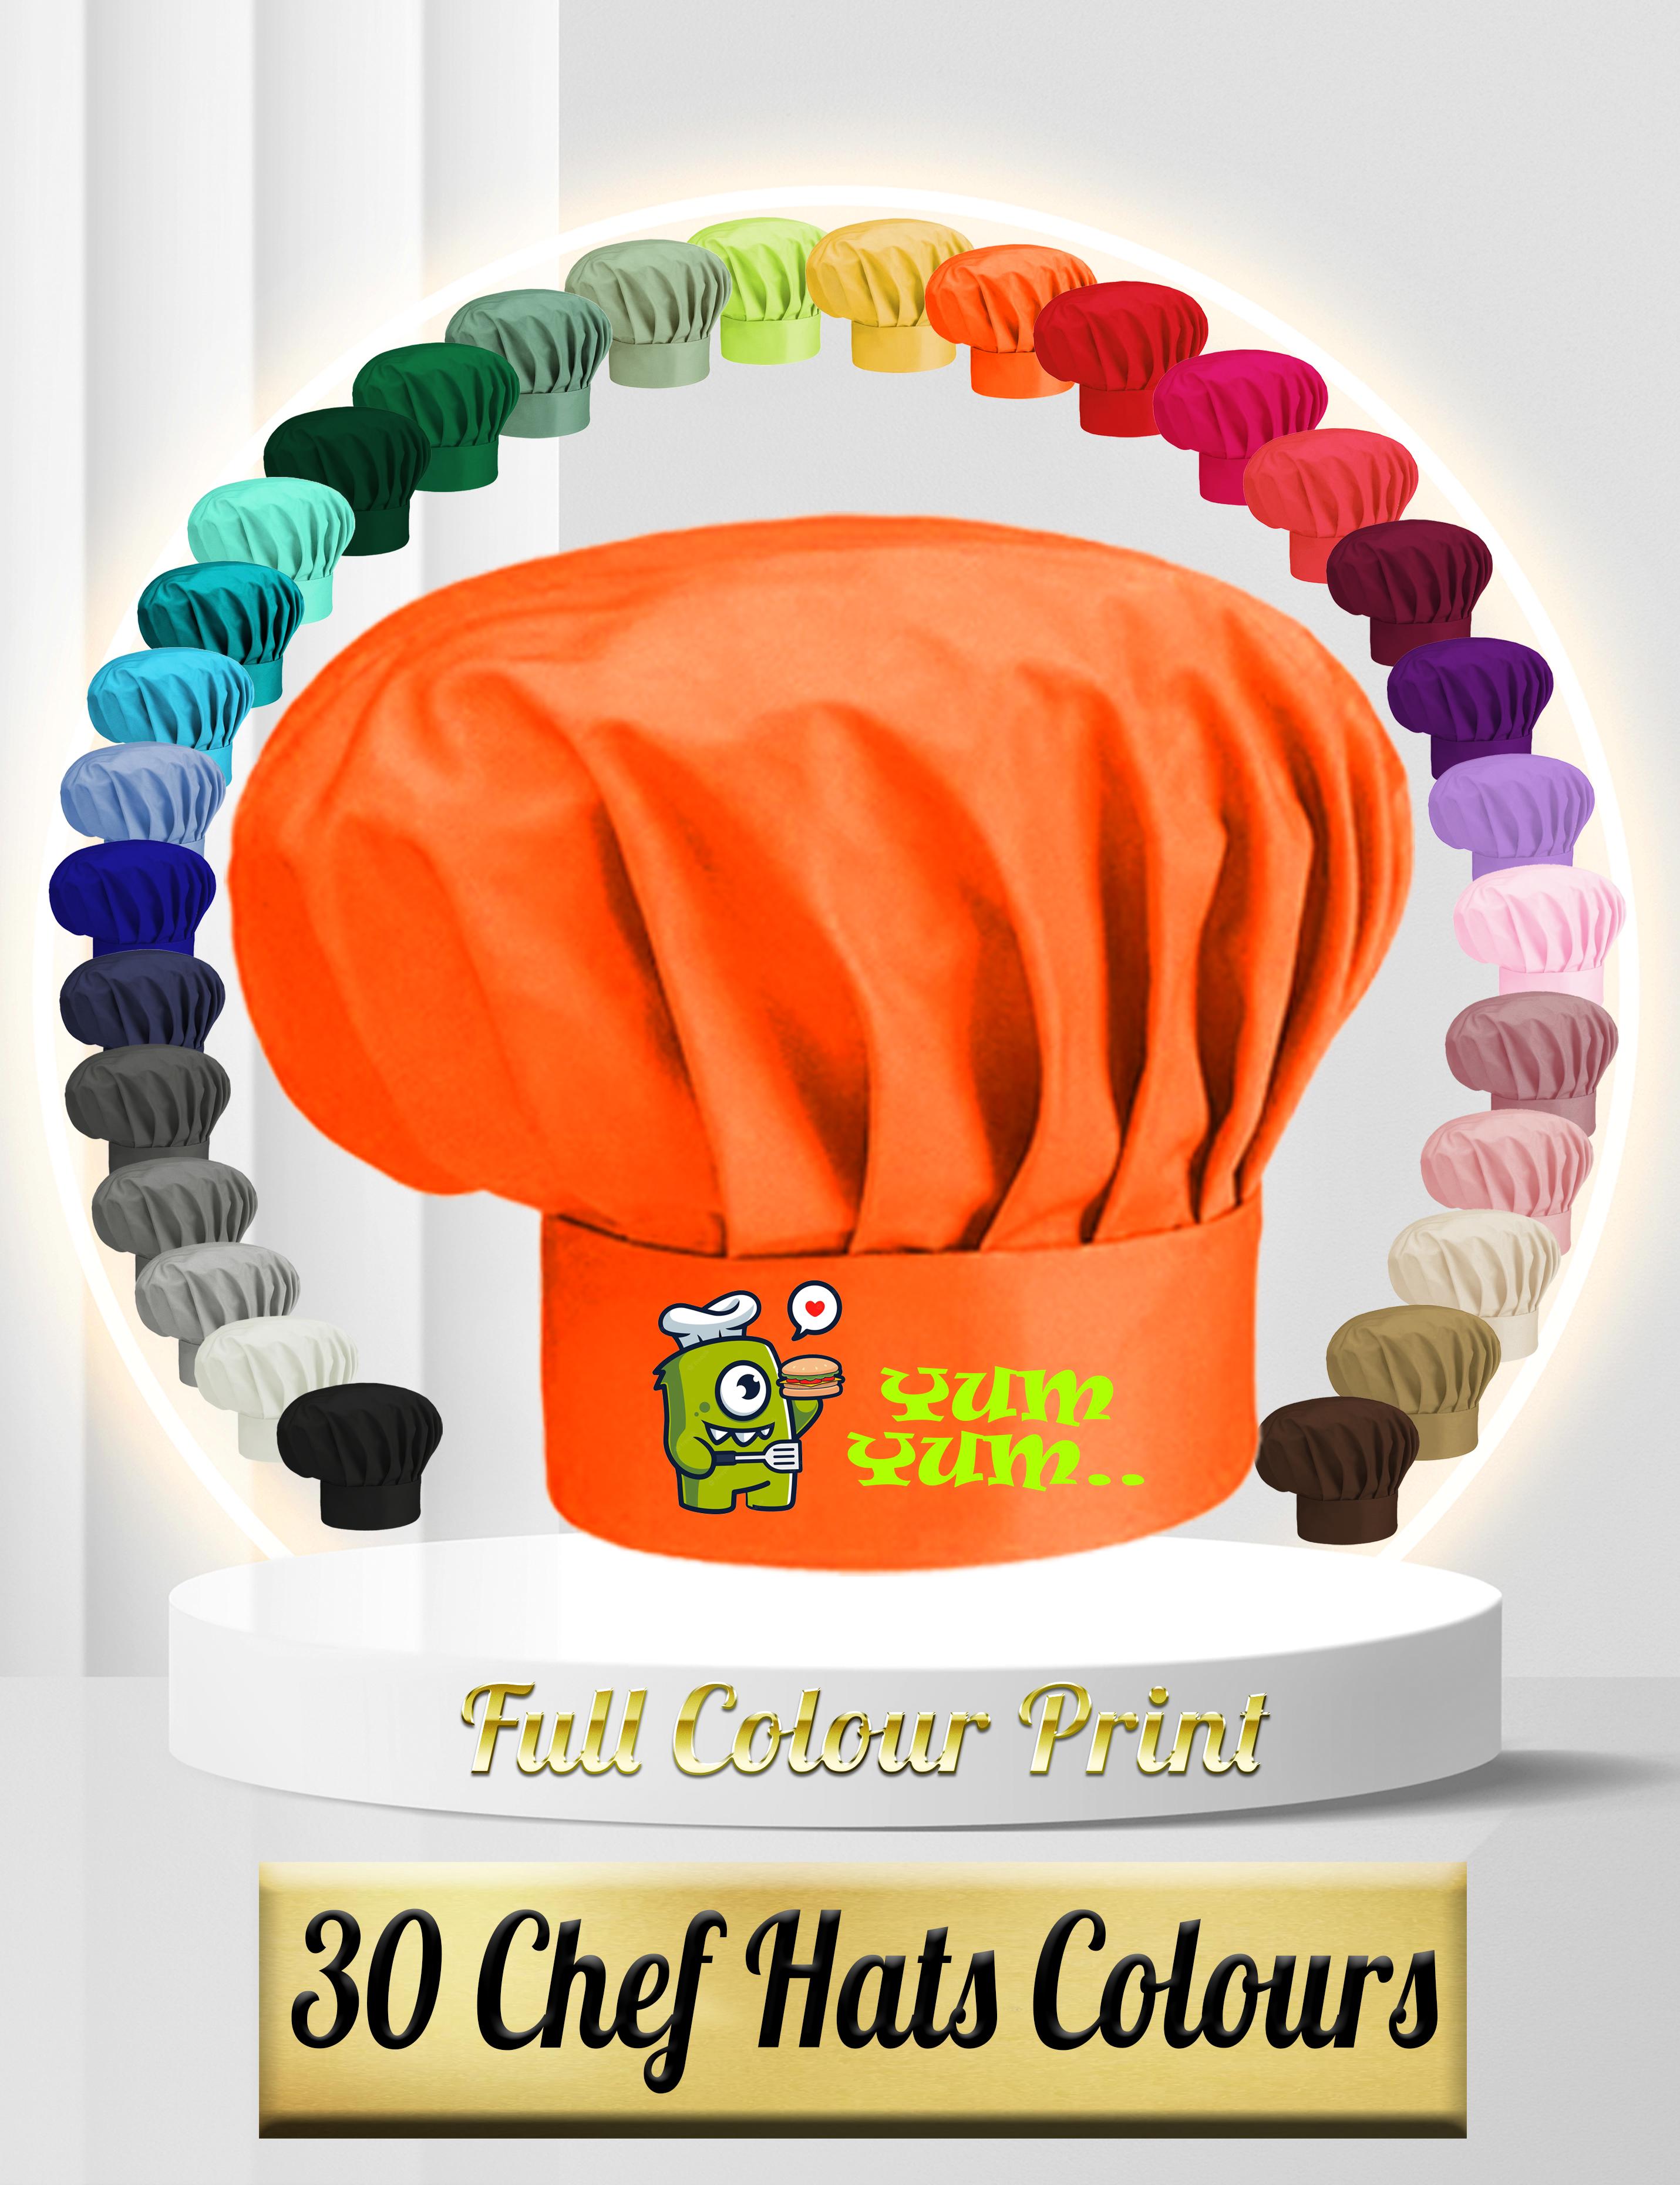 Yum Yum Printed Chef hat